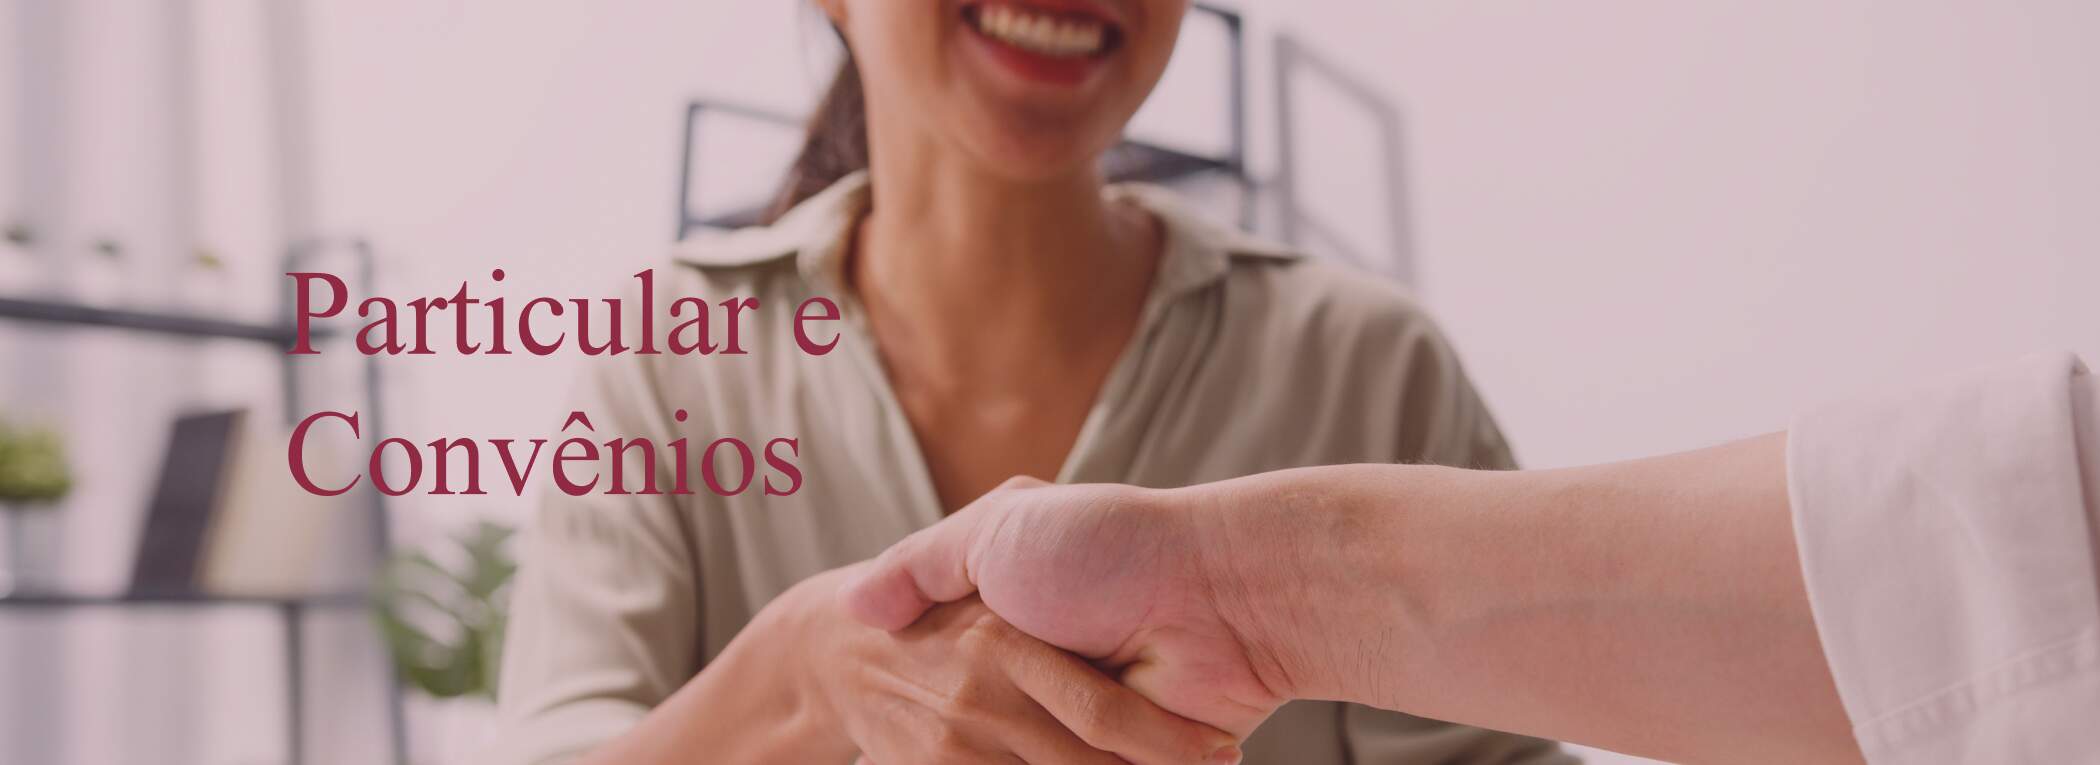 O Consultório Dermatológico Dra. Lilian Salviato tem parceria com os melhores convênios e planos de saúde particulares do Espírito Santo